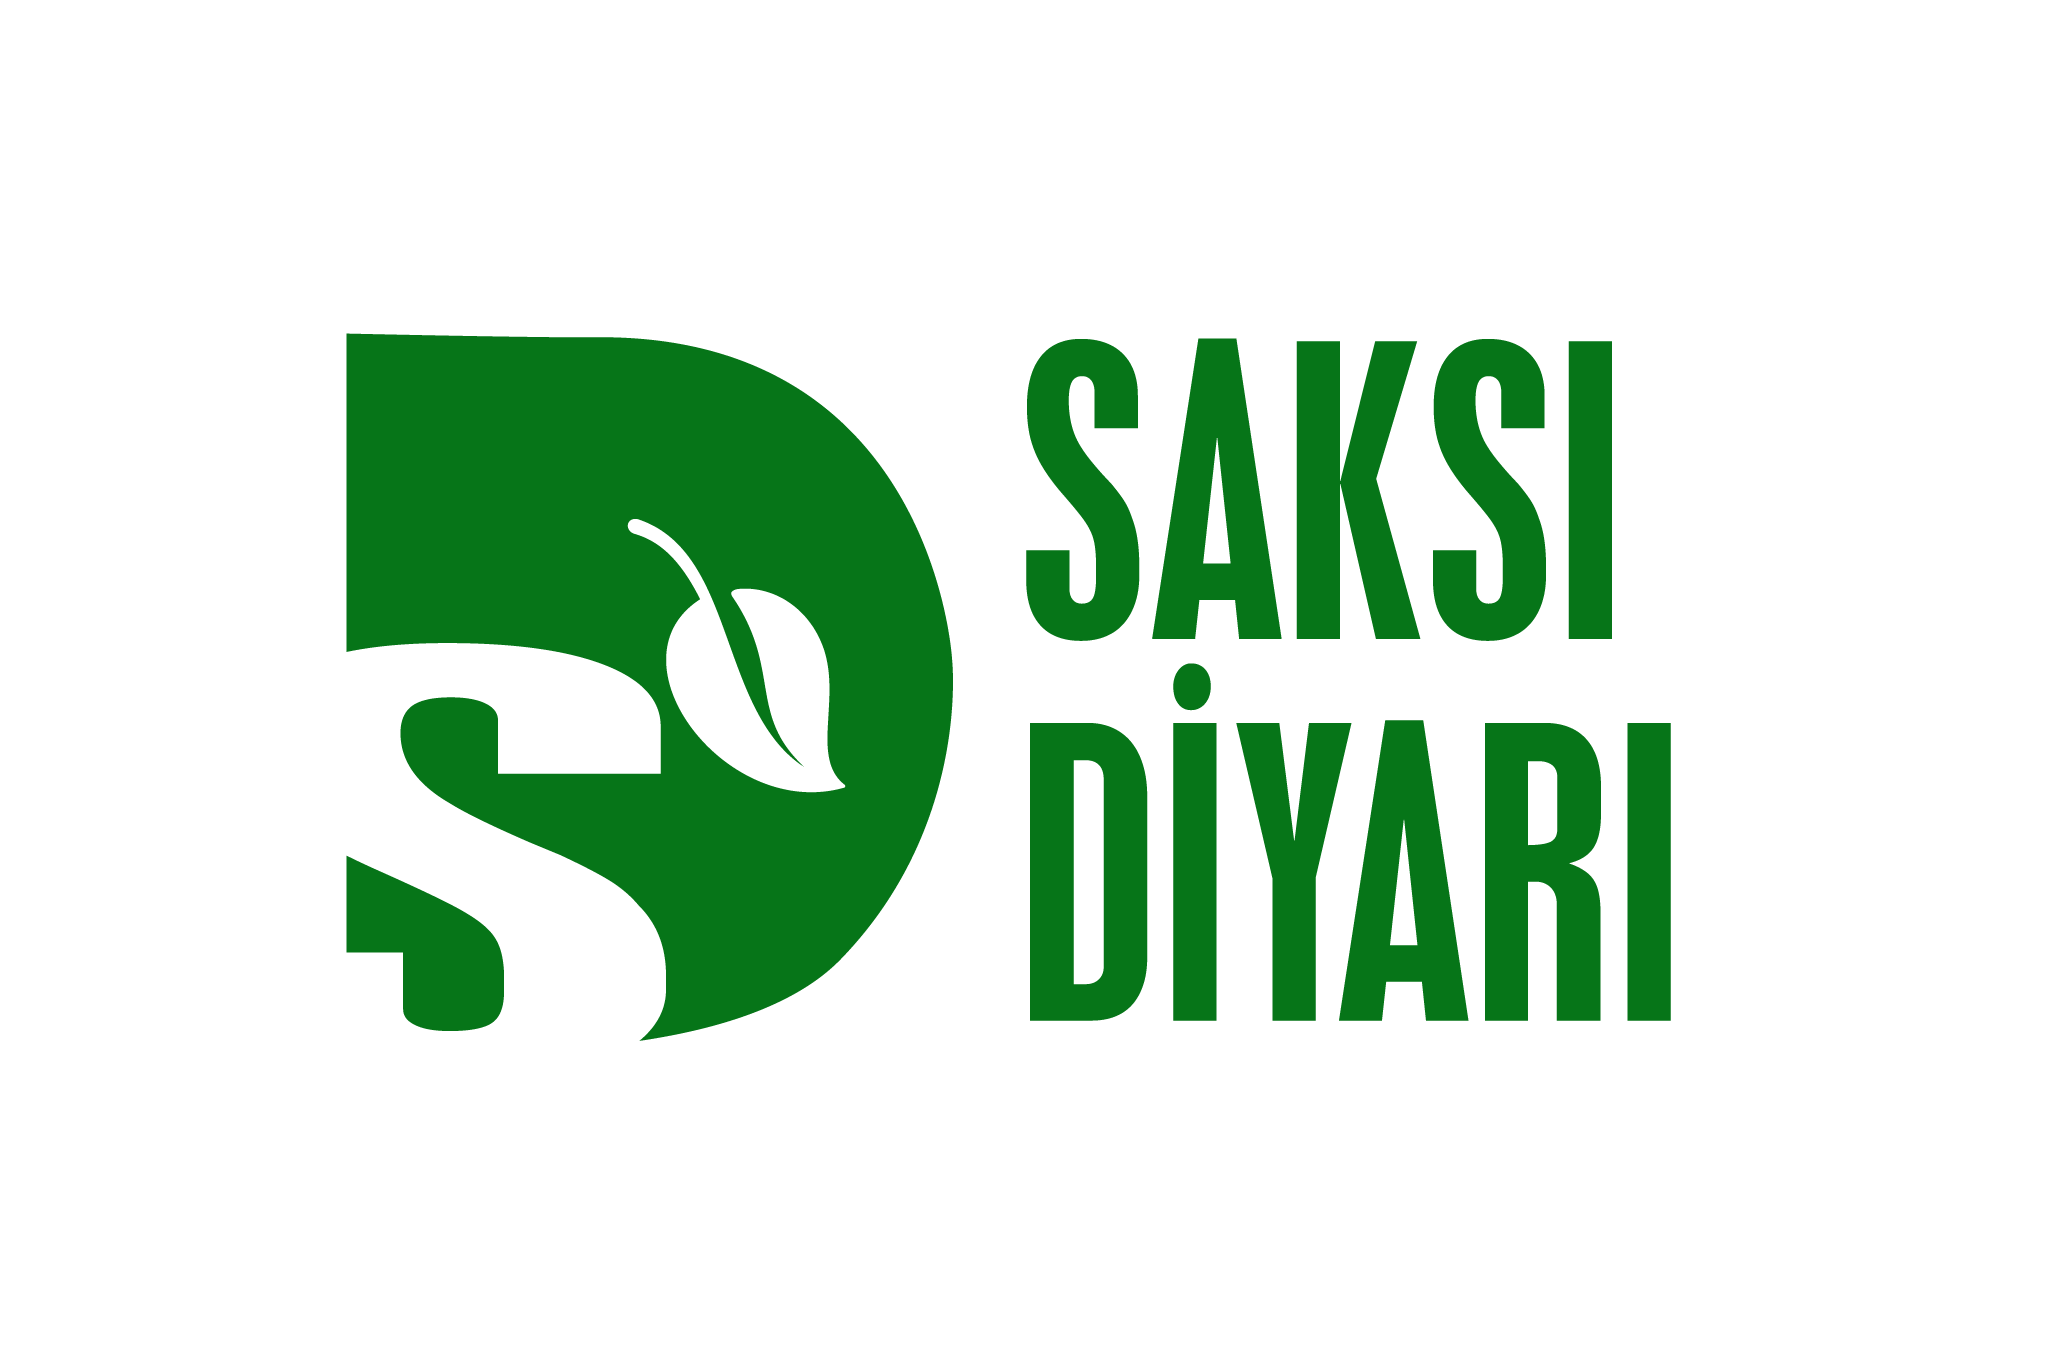 saksidiyari.com